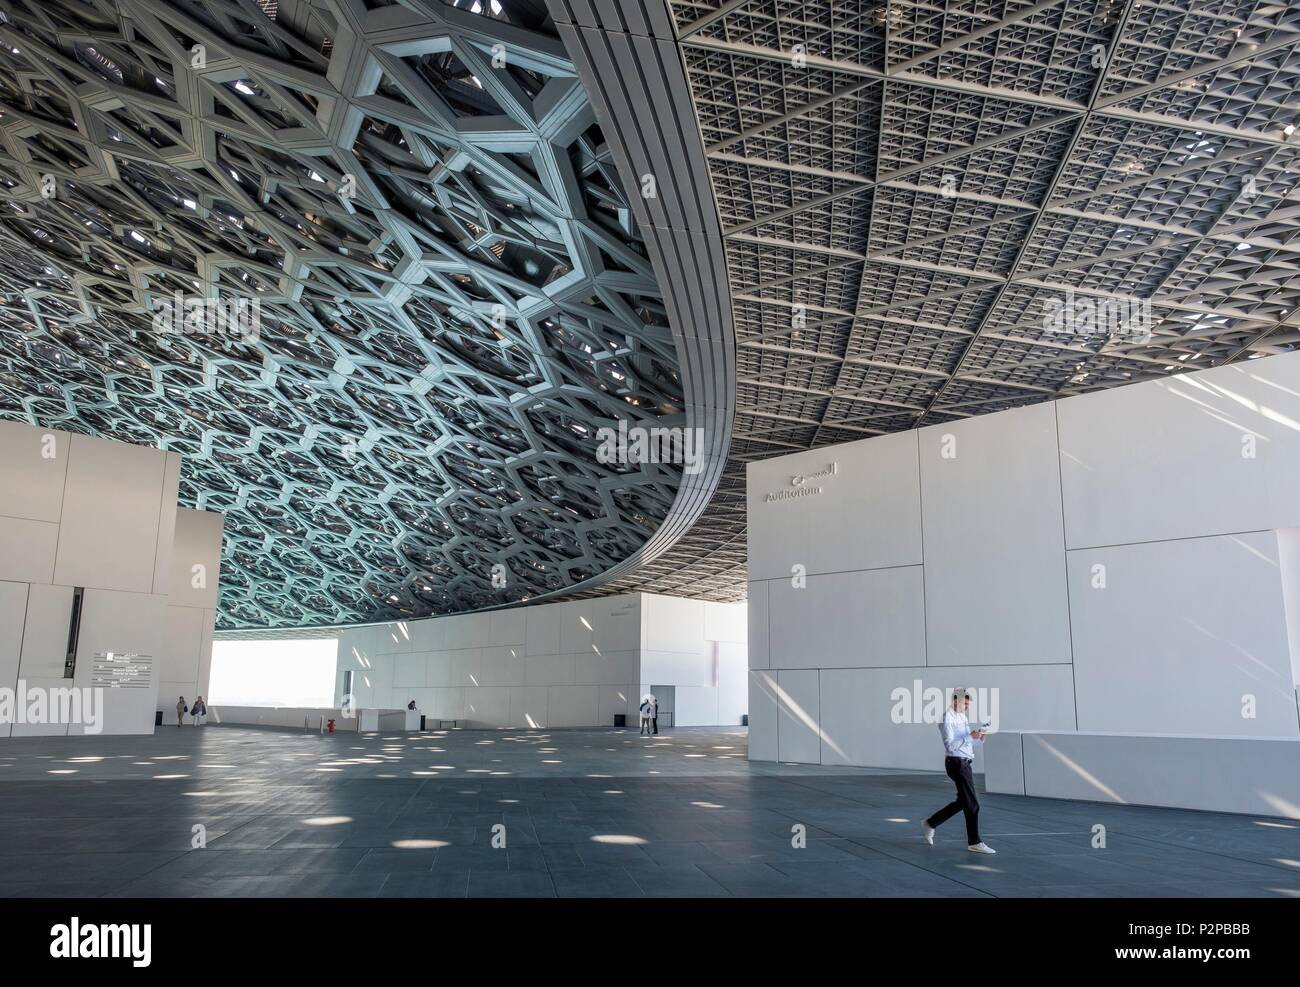 Emirats arabes unis, Abu Dhabi, l'île de Saadiyat, le Louvre Abu Dhabi est le premier musée universel dans le monde arabe, conçu et construit par l'architecte français Jean Nouvel Banque D'Images